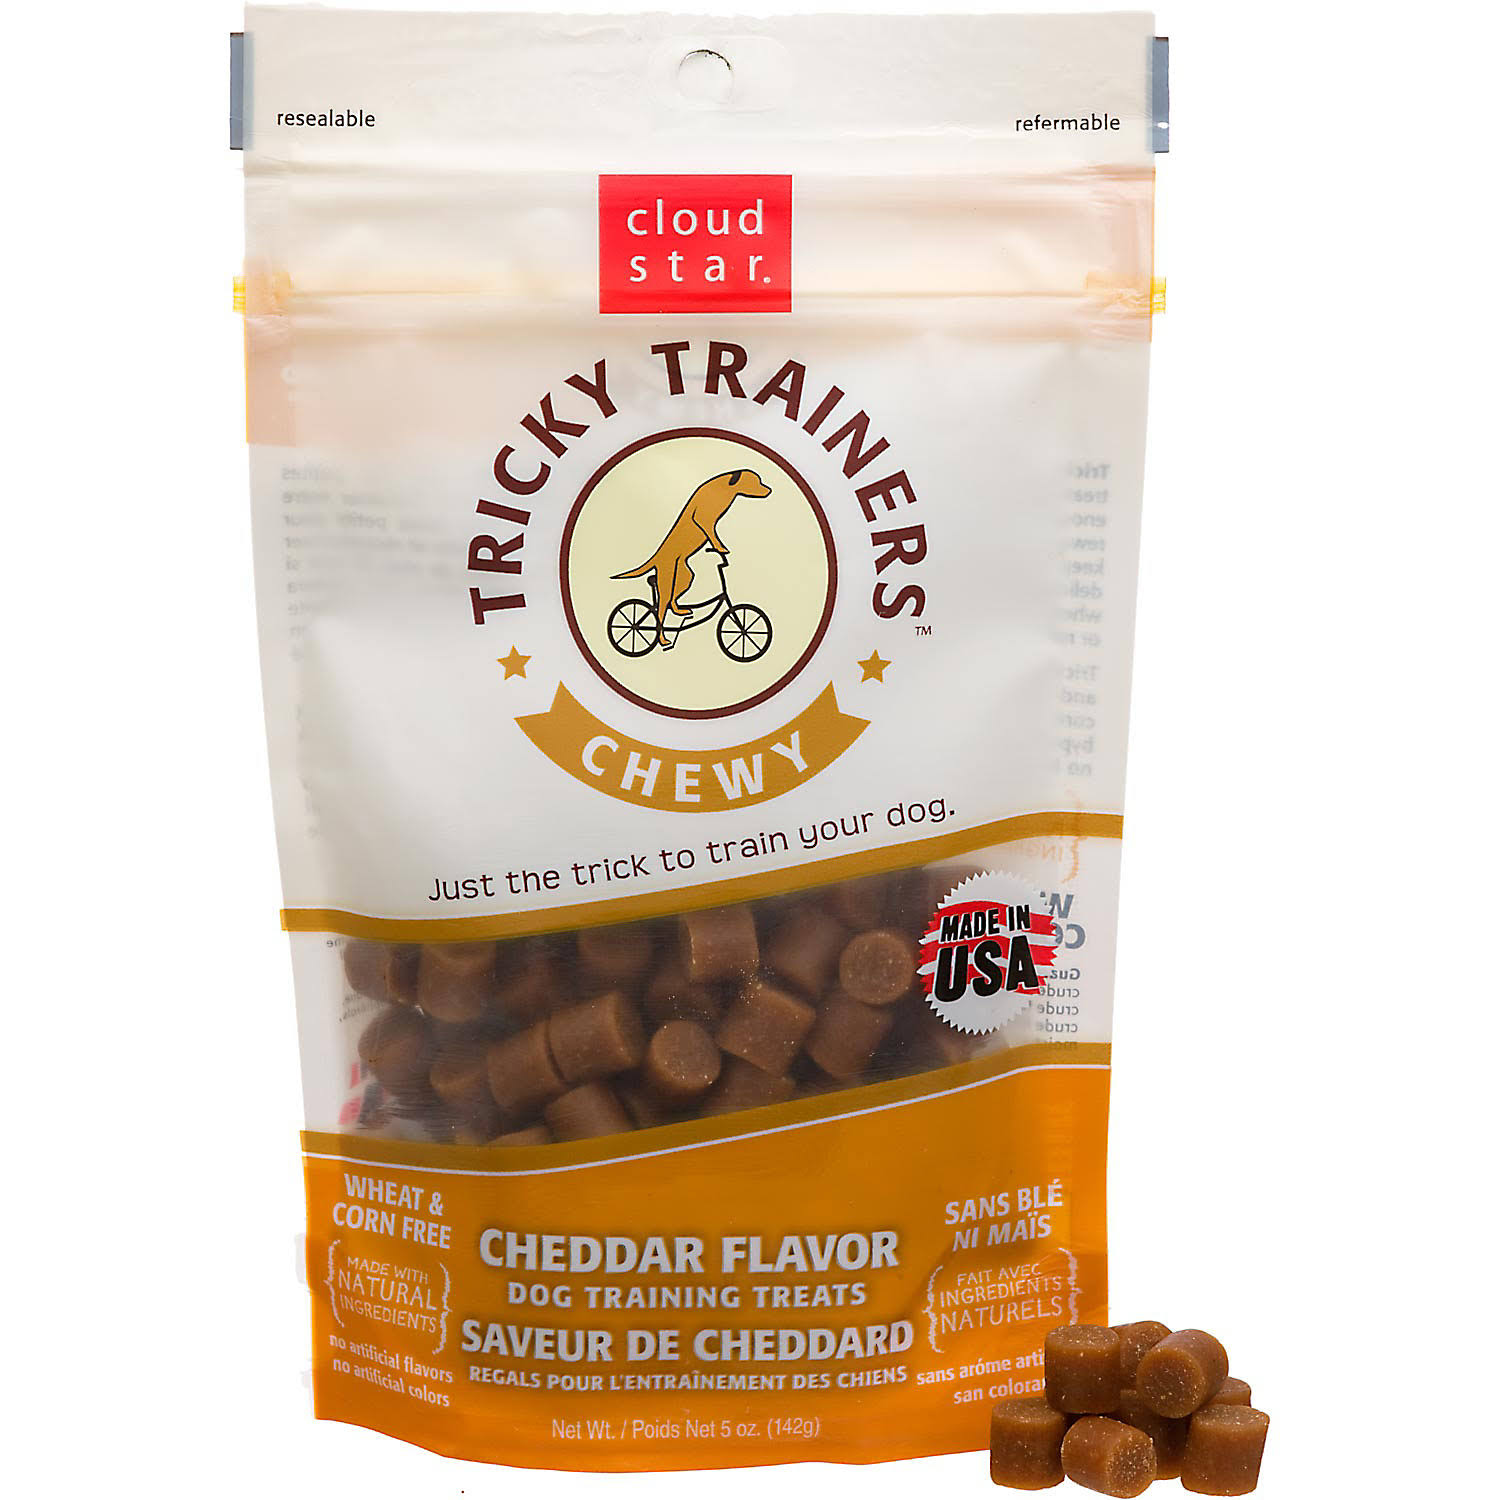 Tricky Trainer Chewy Dog Training Treats - Cheddar Flavor, 5oz